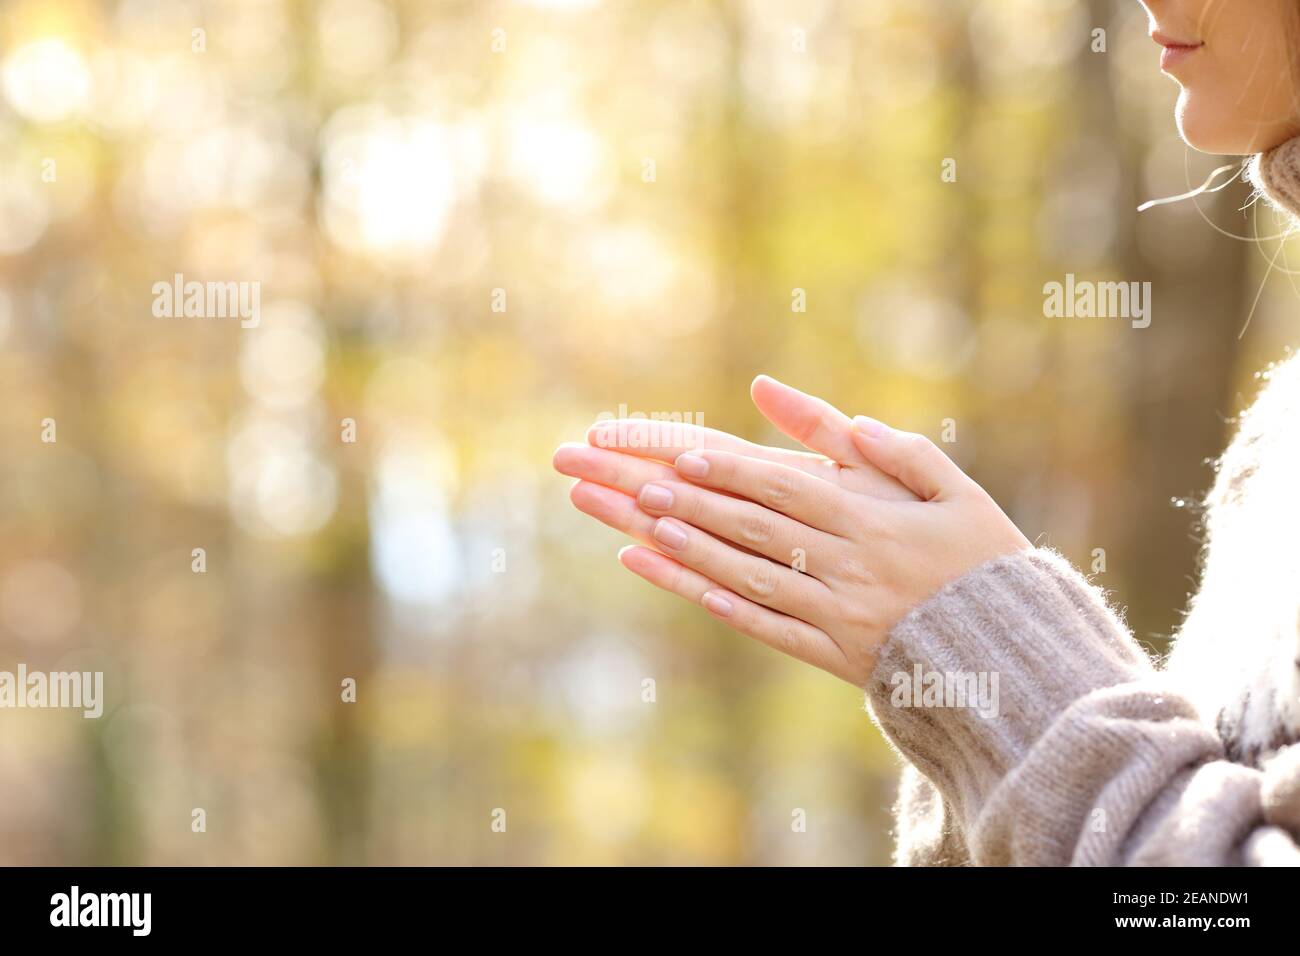 Frau, die in einem kalten Herbst die Hände reibt und erhitzt Stockfoto